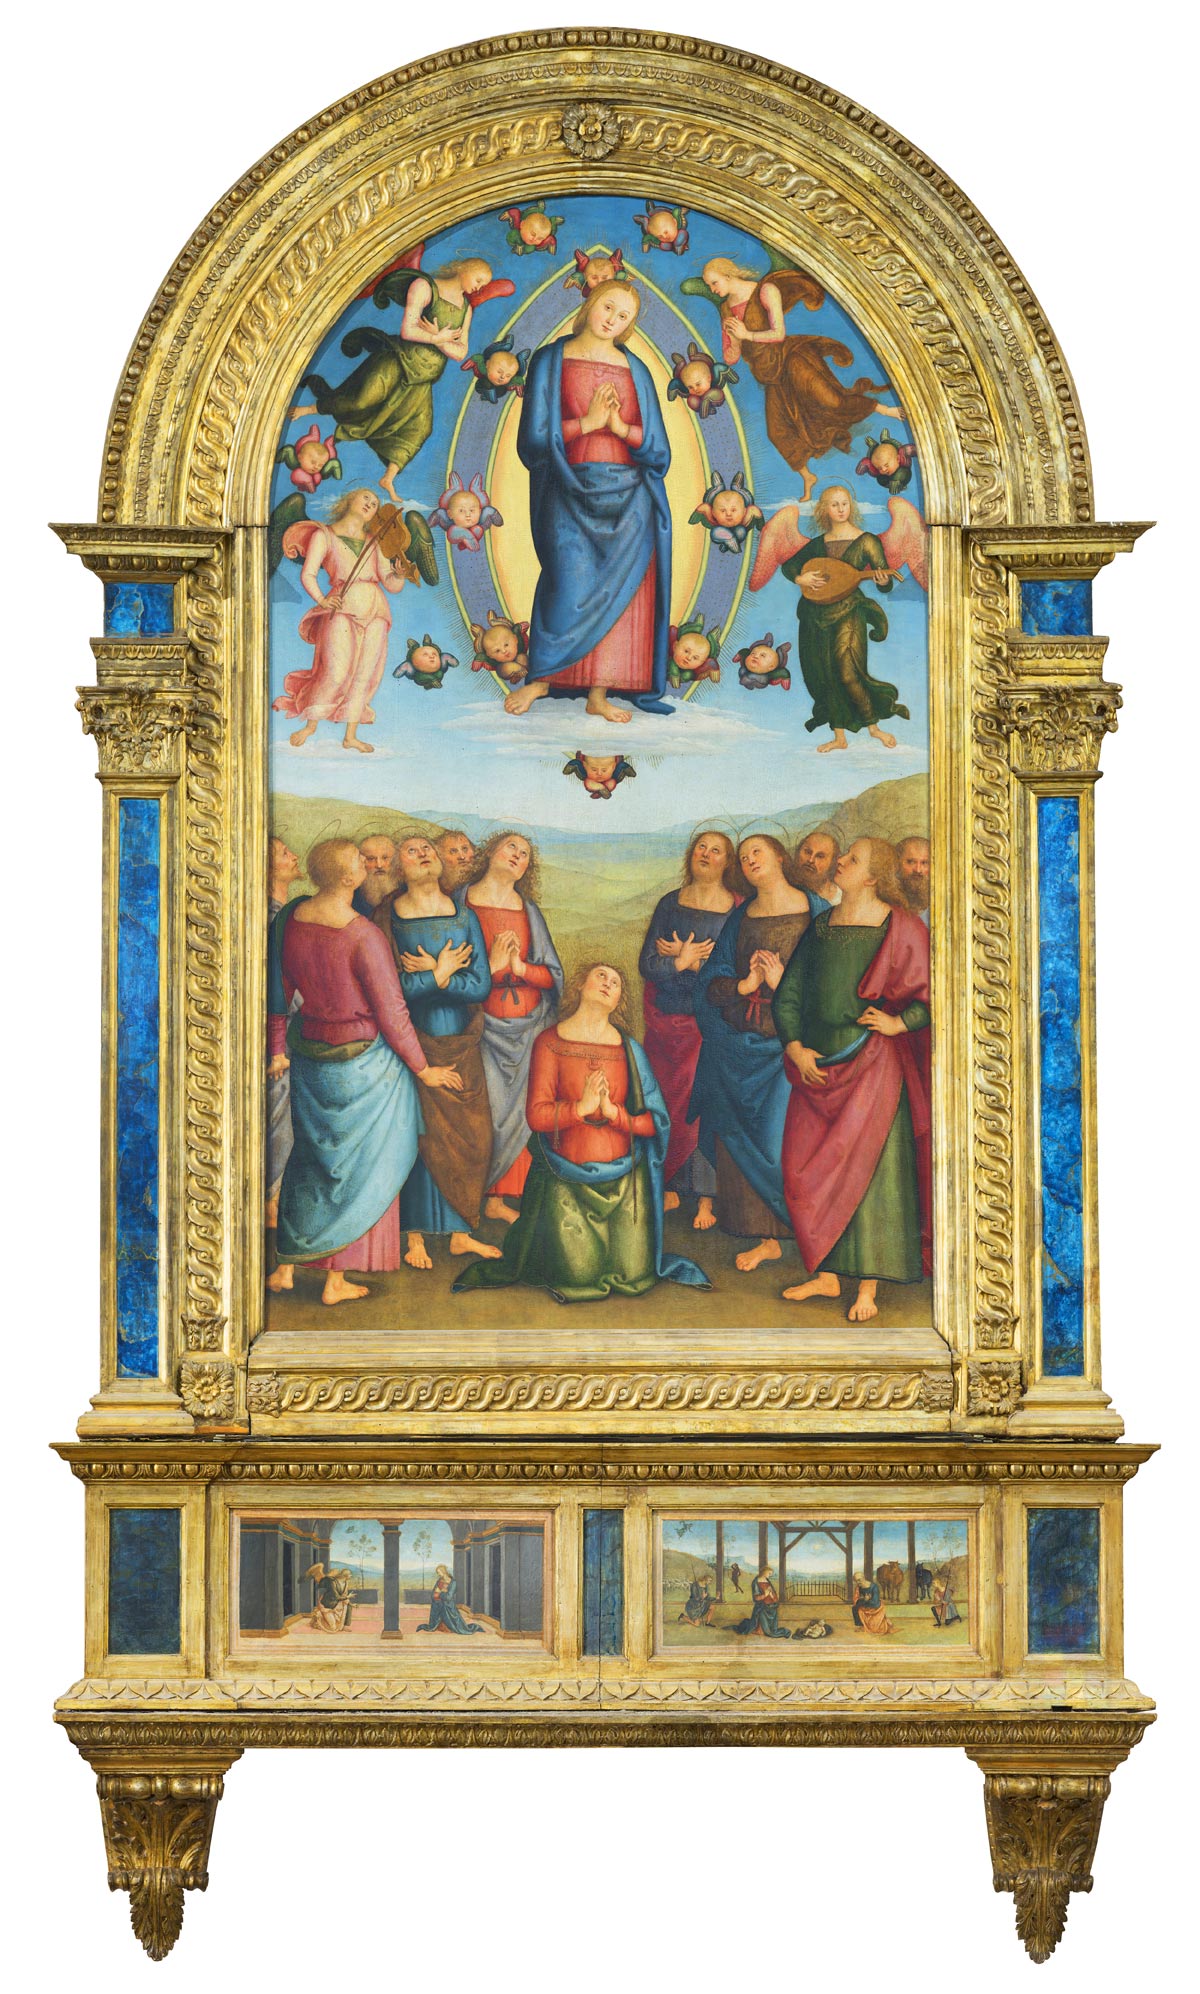 Perugino, Assunzione della Vergine, Pala di Corciano (1512; tempera su tavola, 226 x 146 cm, i due pannelli della predella 31 x 78 cm; Corciano, Santa Maria Assunta)